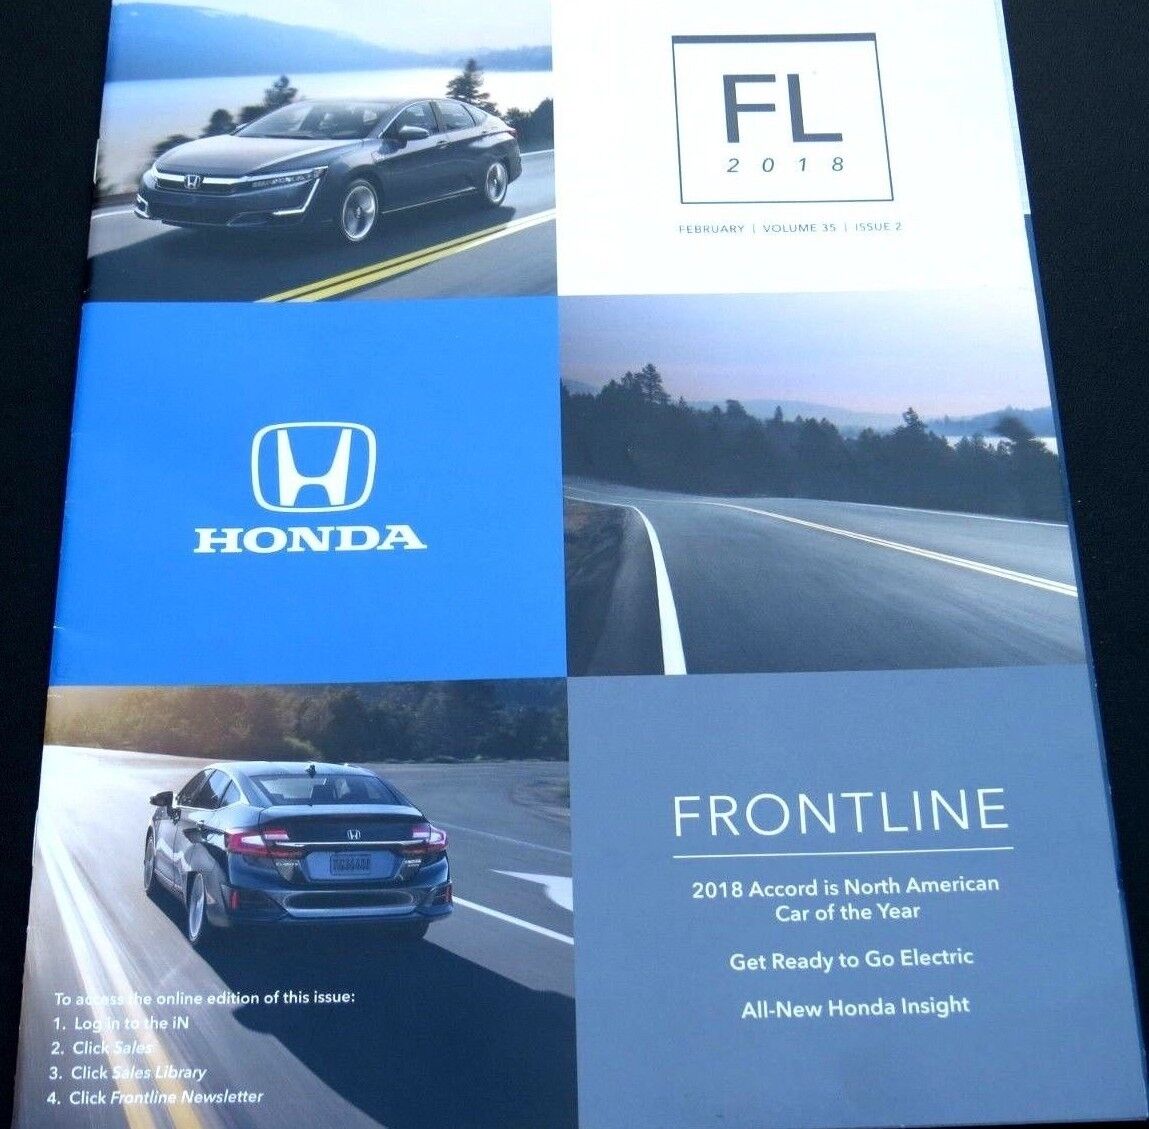 RARE 2018 Honda Frontline Salesperson 8 Page Magazine February Vol 35 Issue 2